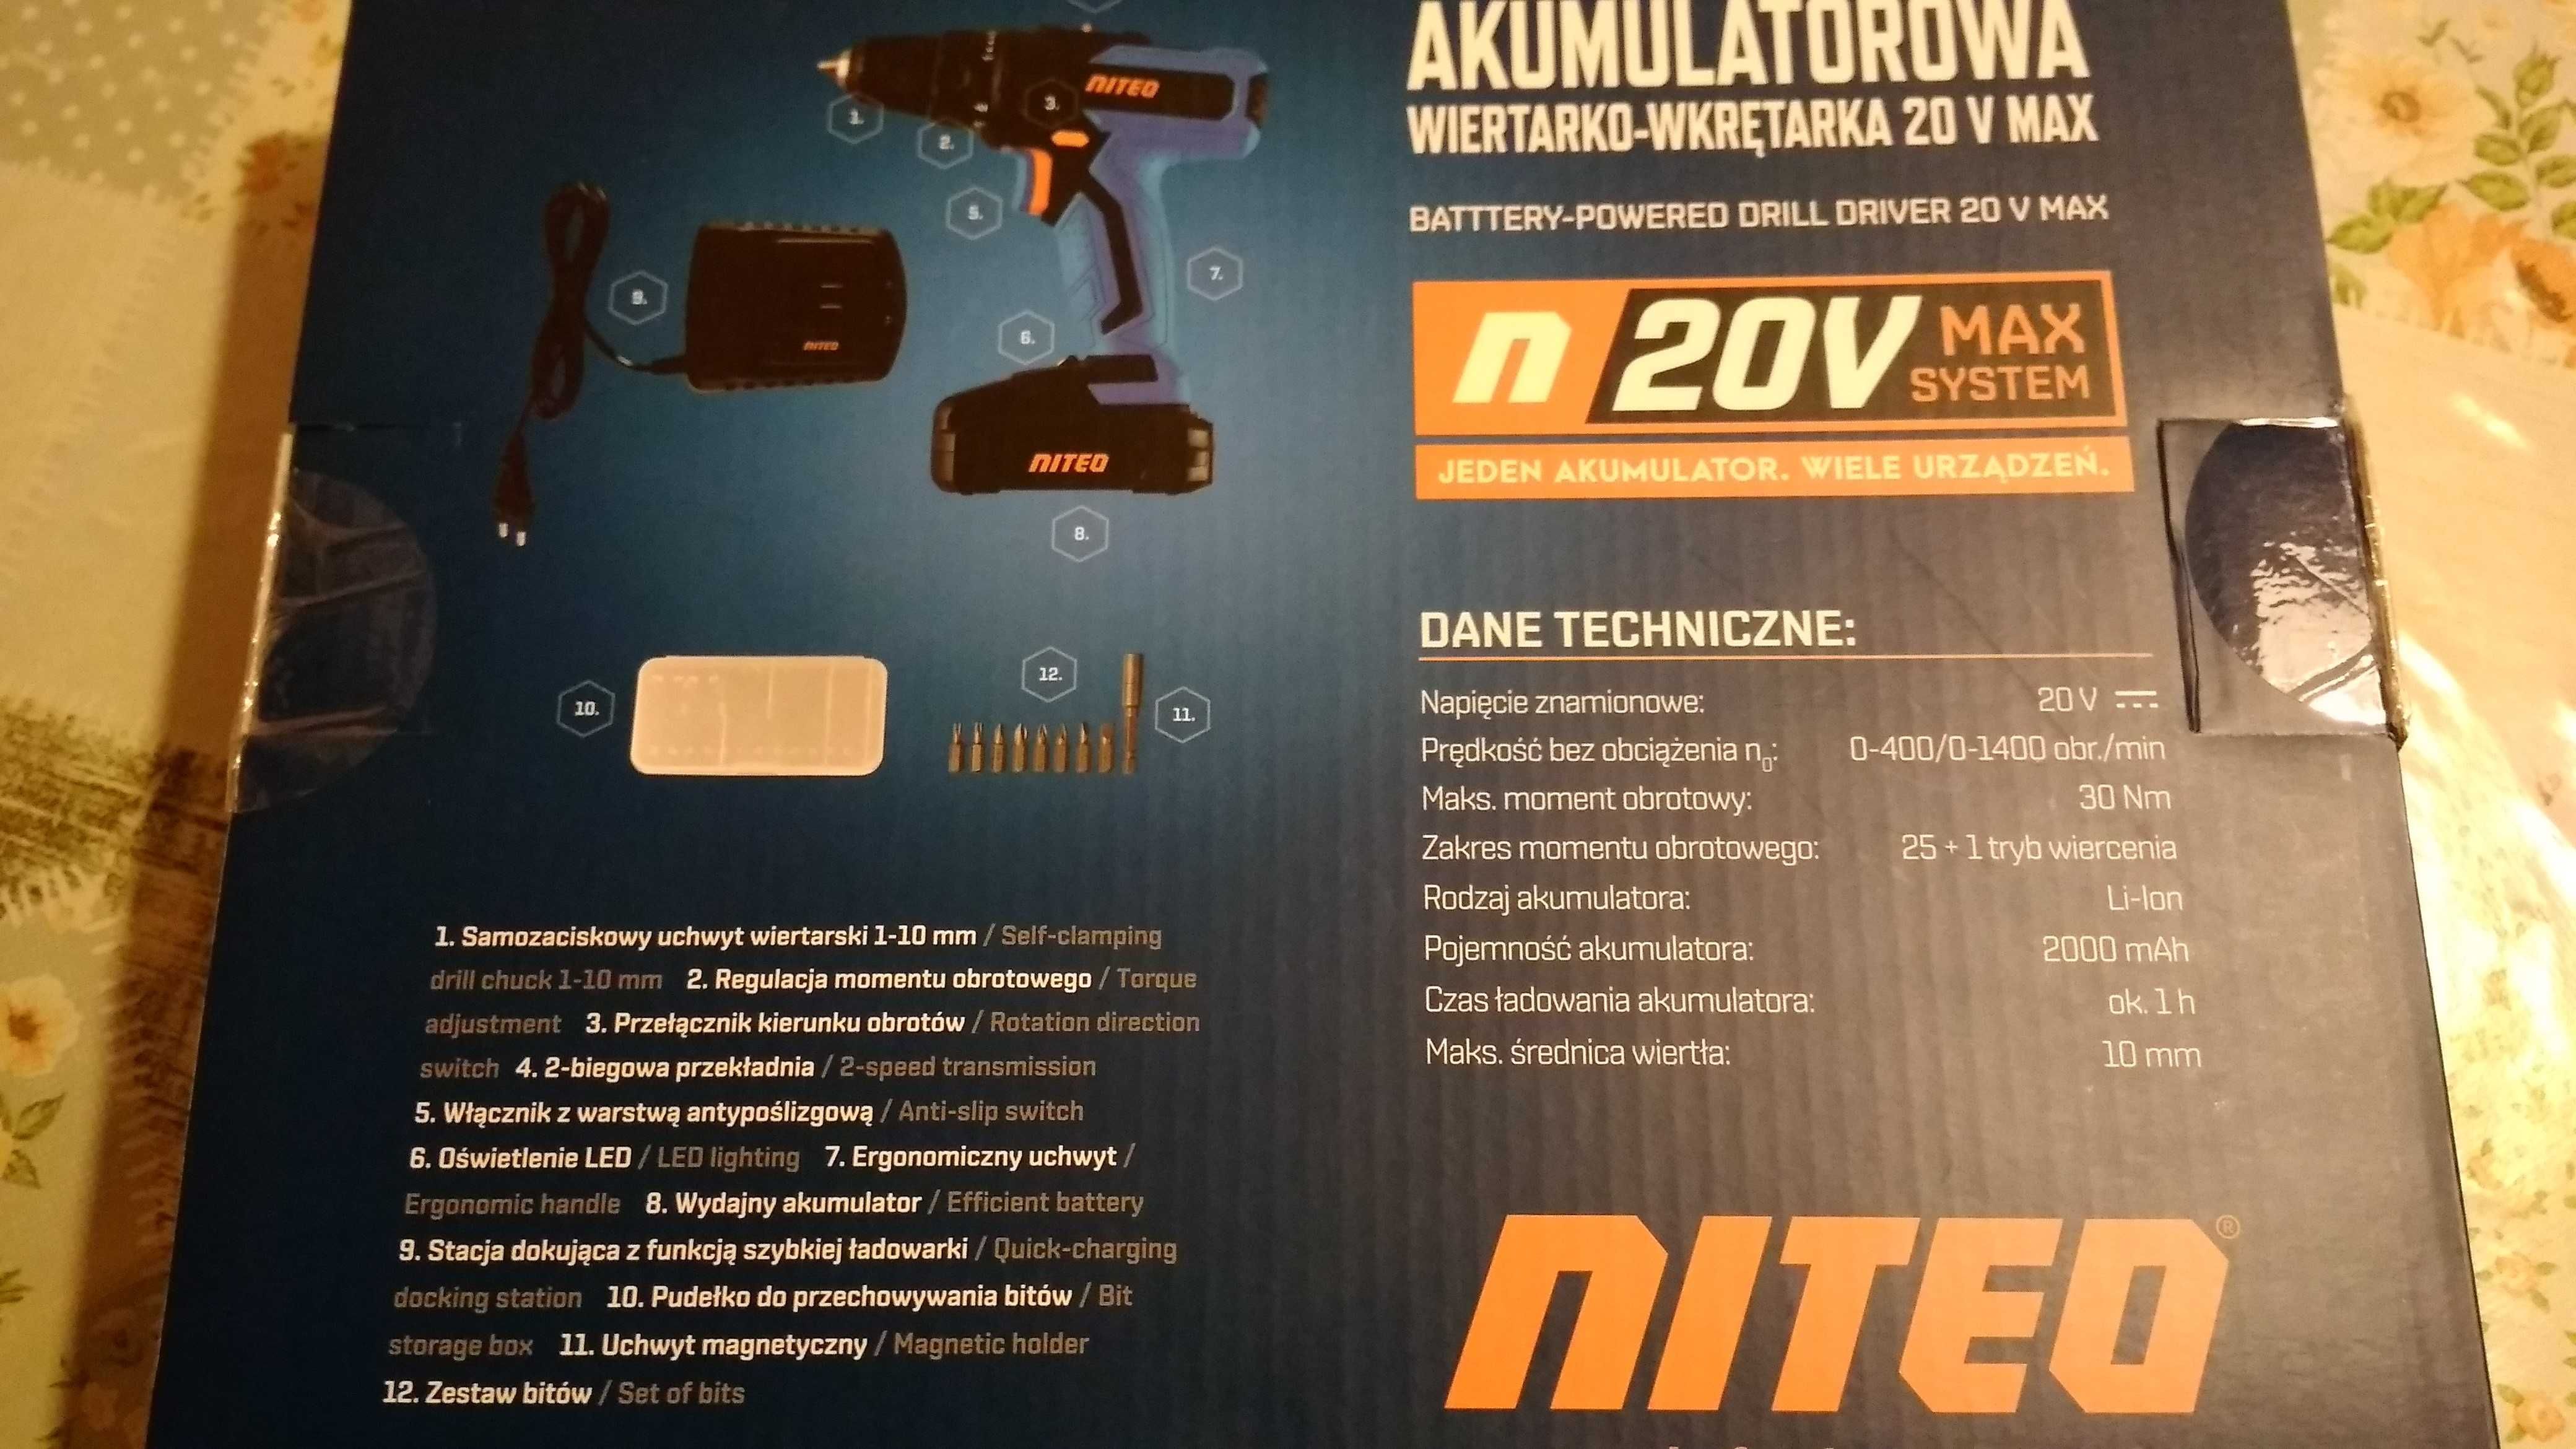 Wiertarko wkrętarka akumulatorowa NITEO 20 V MAX komplet